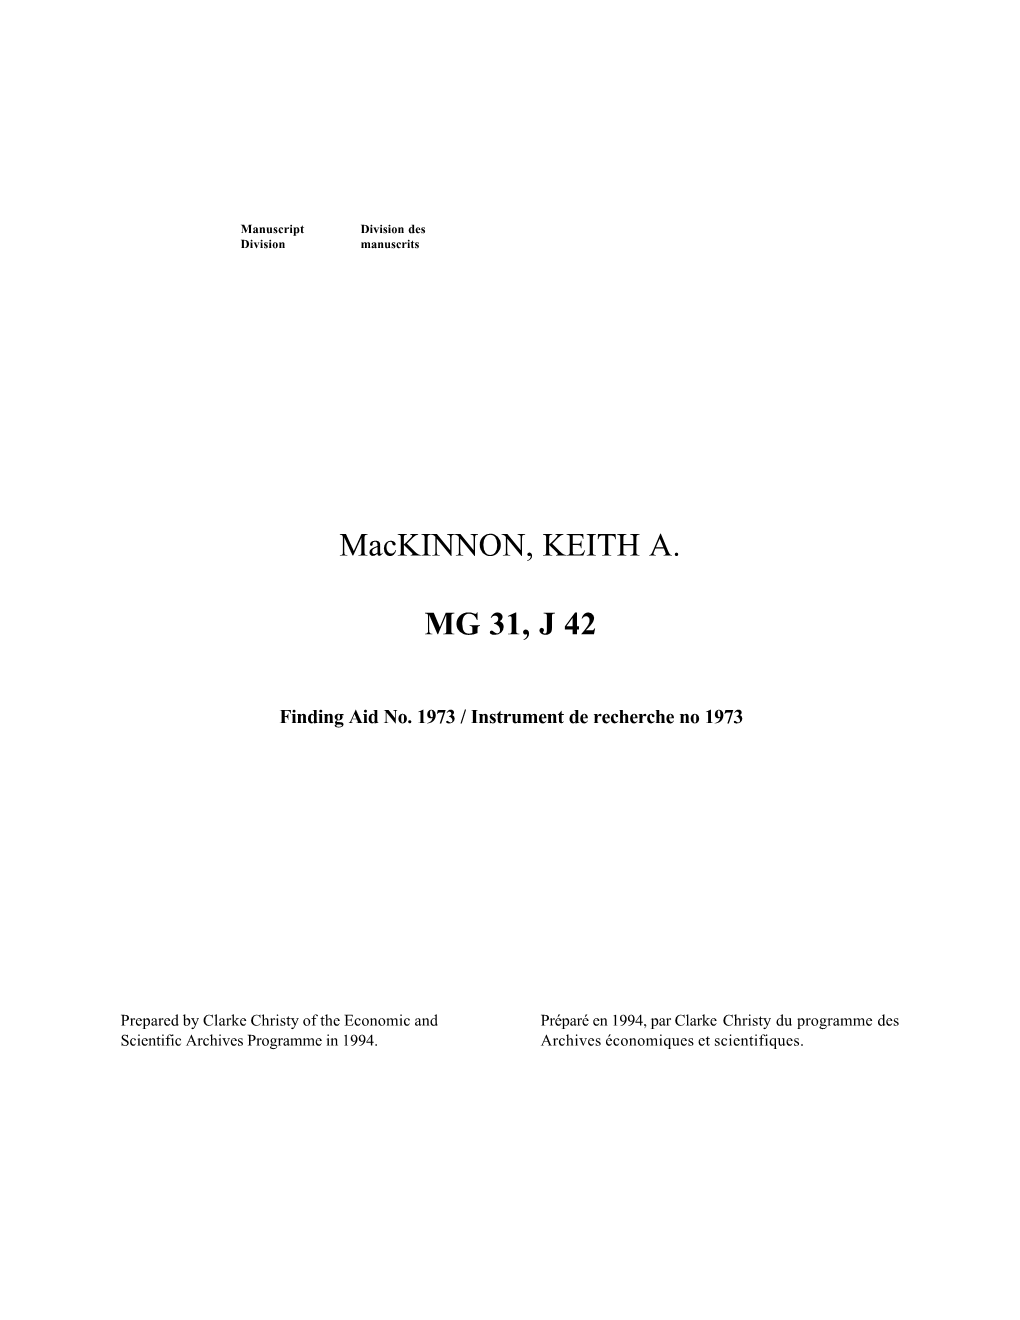 Mackinnon, KEITH A. MG 31, J 42